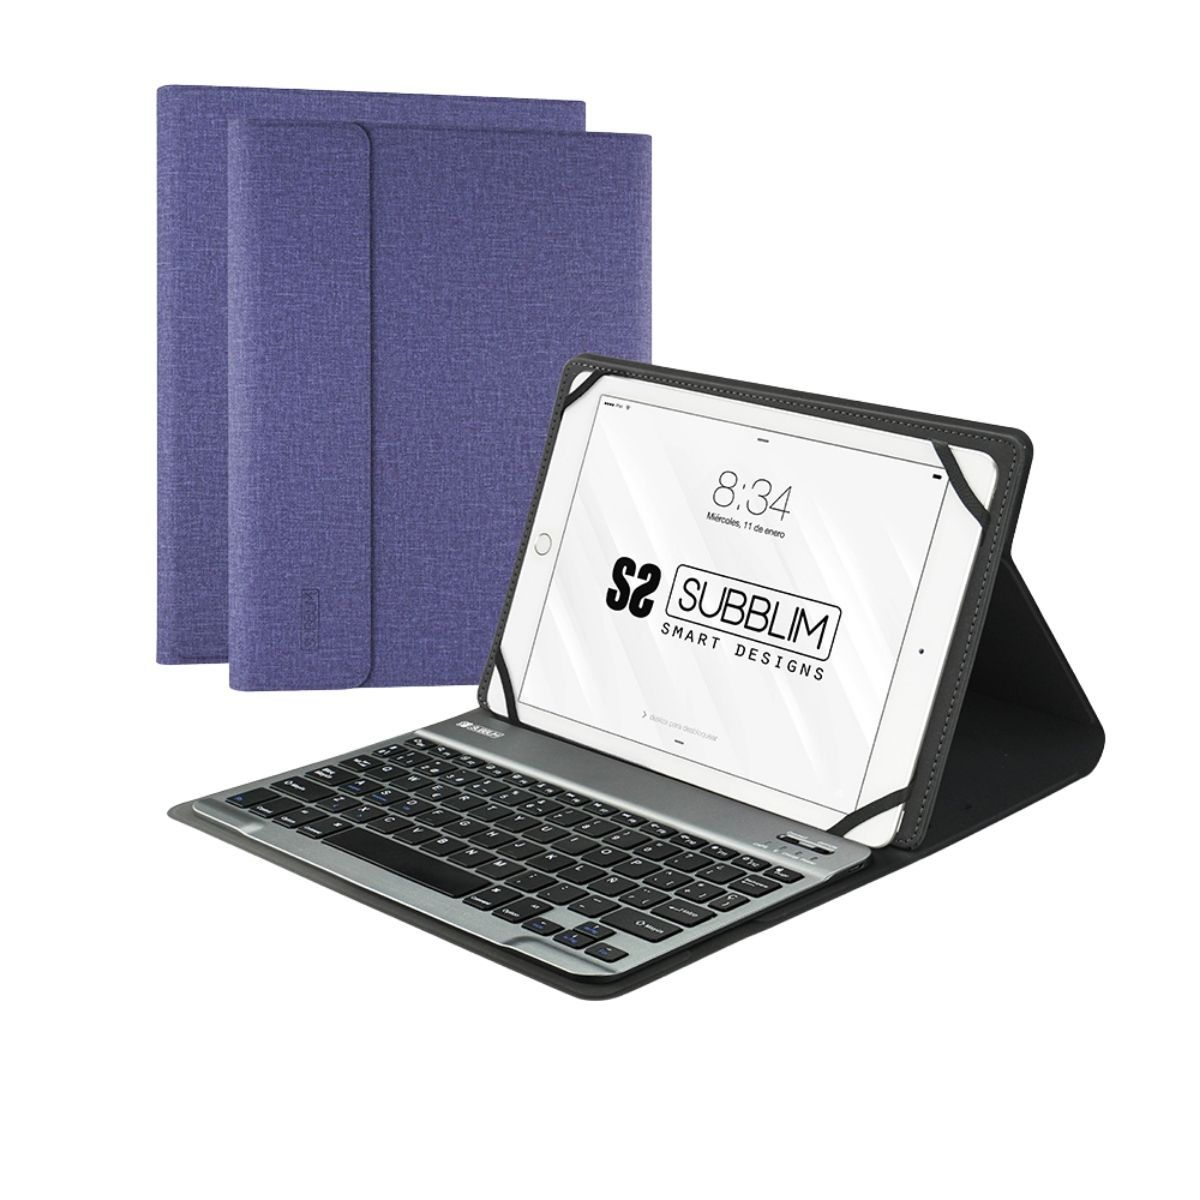 Subblim Keytab Pro bluetooth lila para tablet 10.1 funda universal con teclado 101 108 morado inch compatible todas las android conector micro usb adaptador incluido